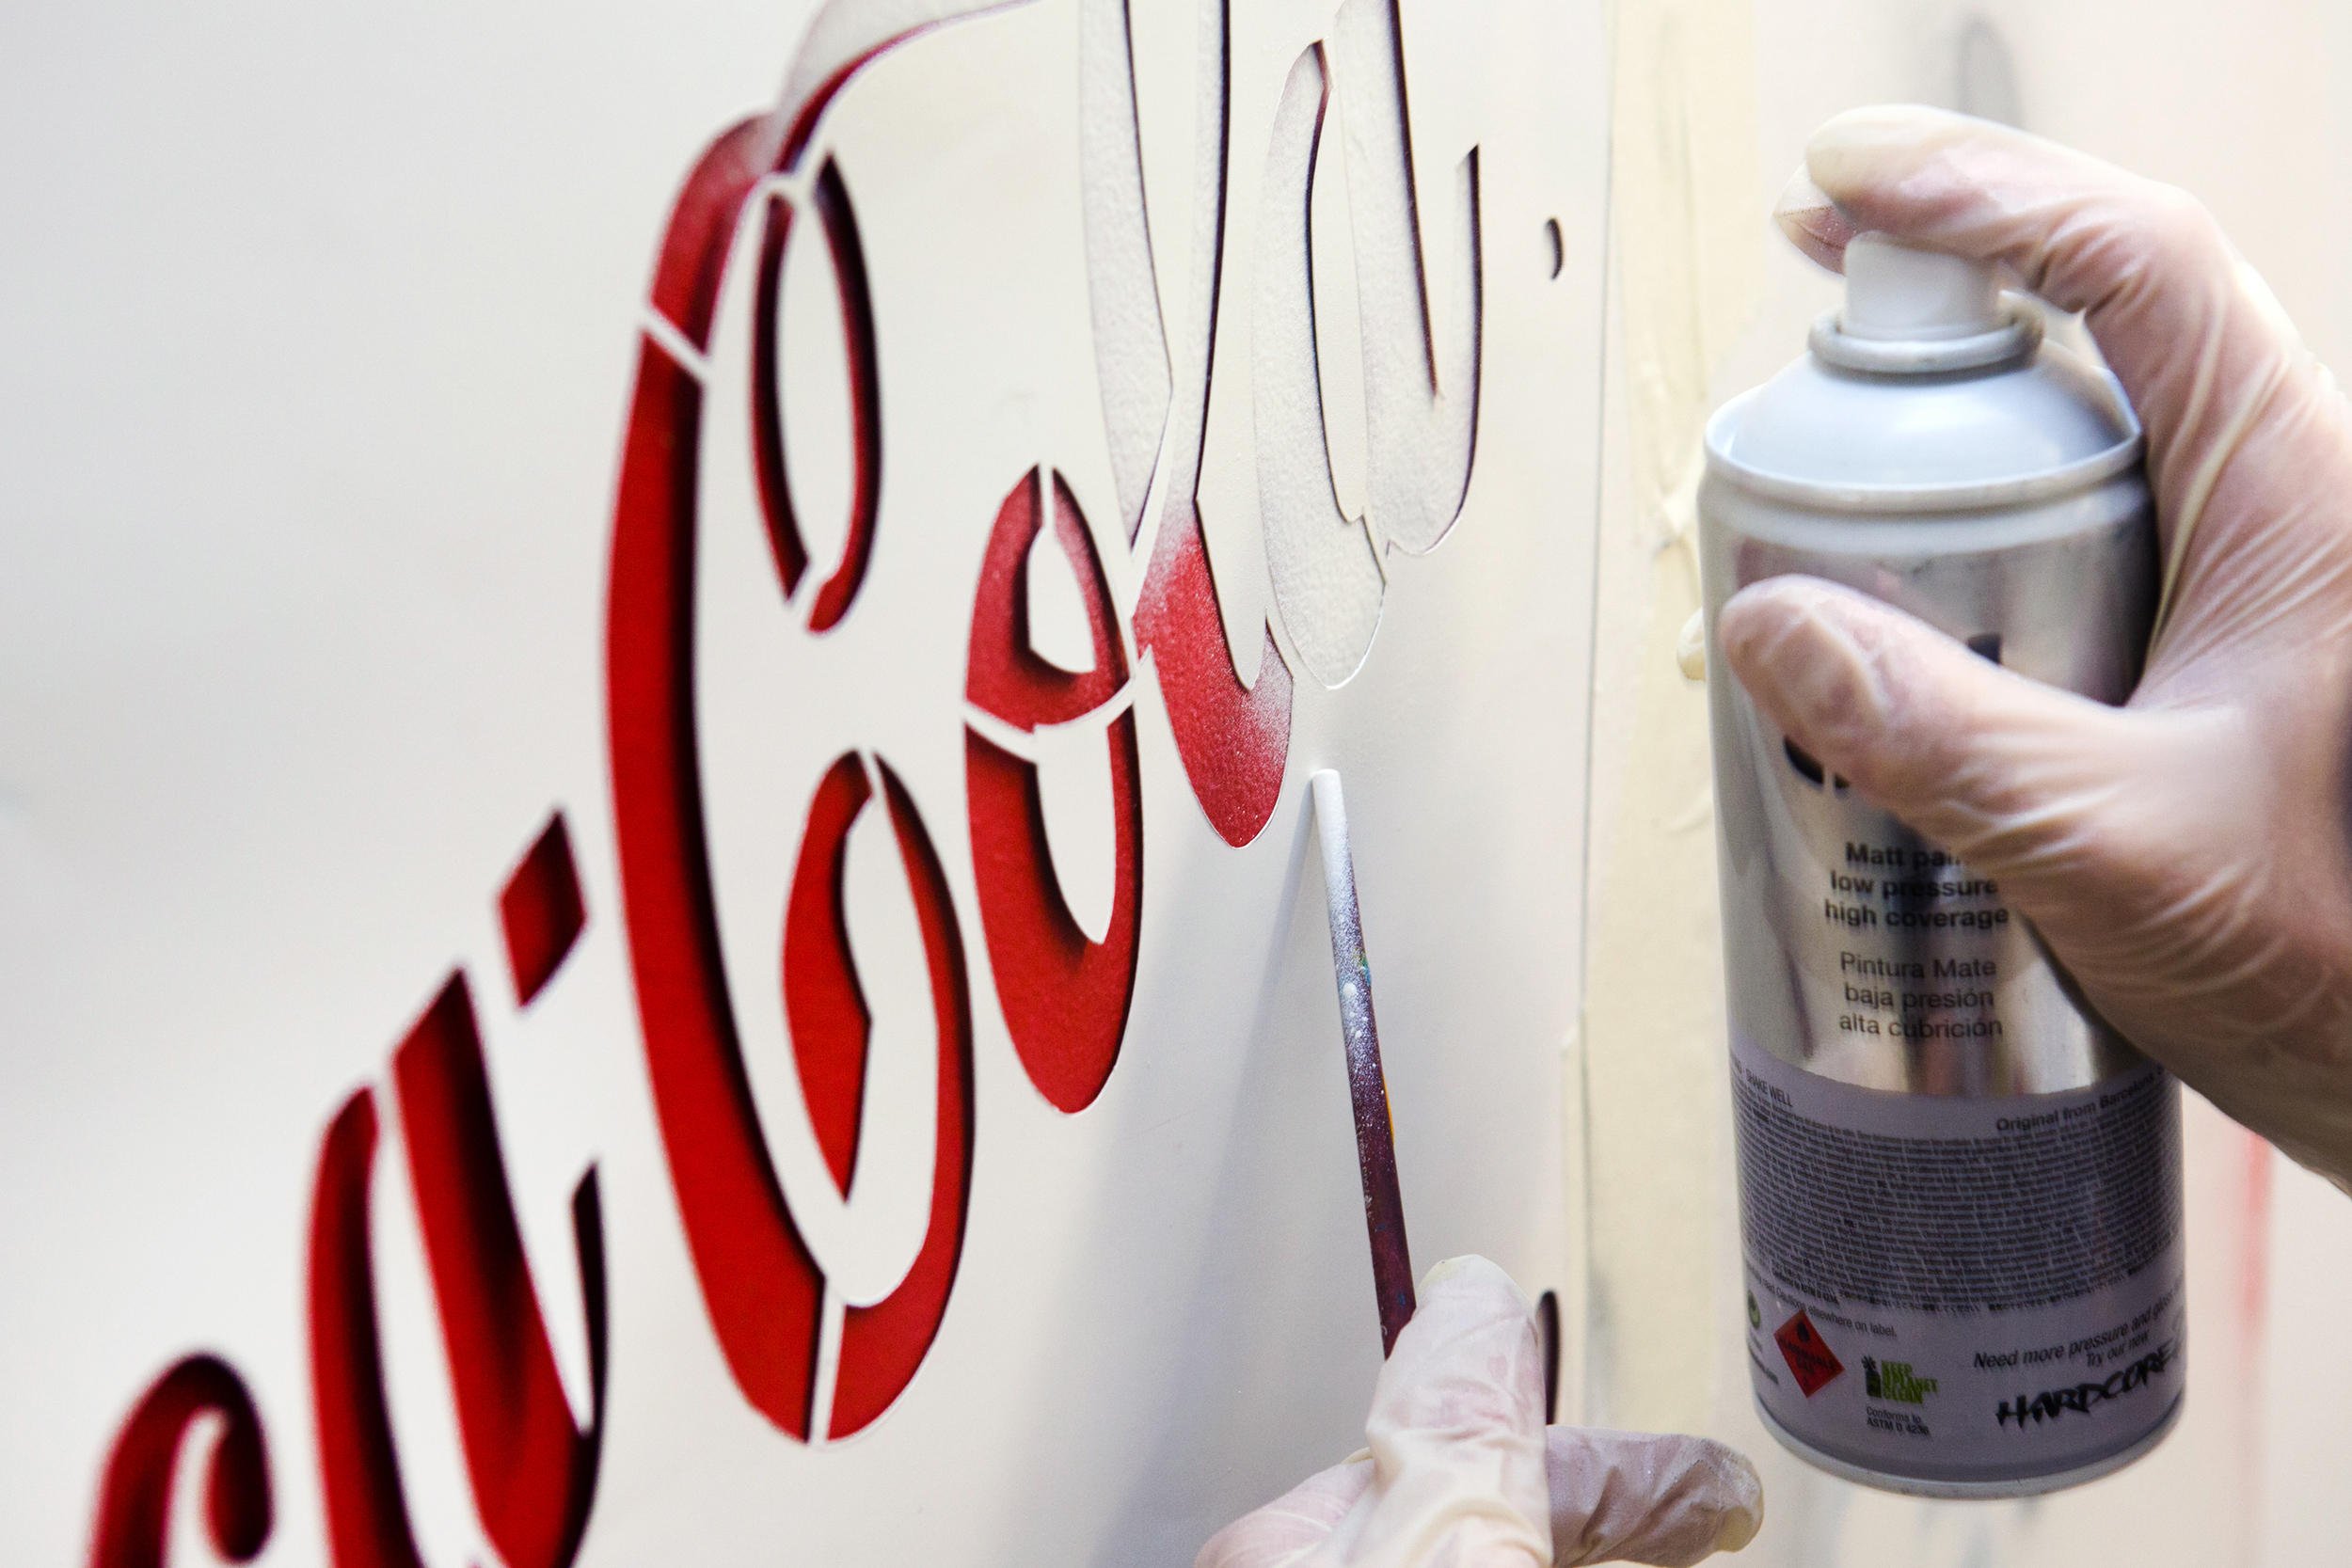 CocaCola-Spray-LukeEmbden.jpg